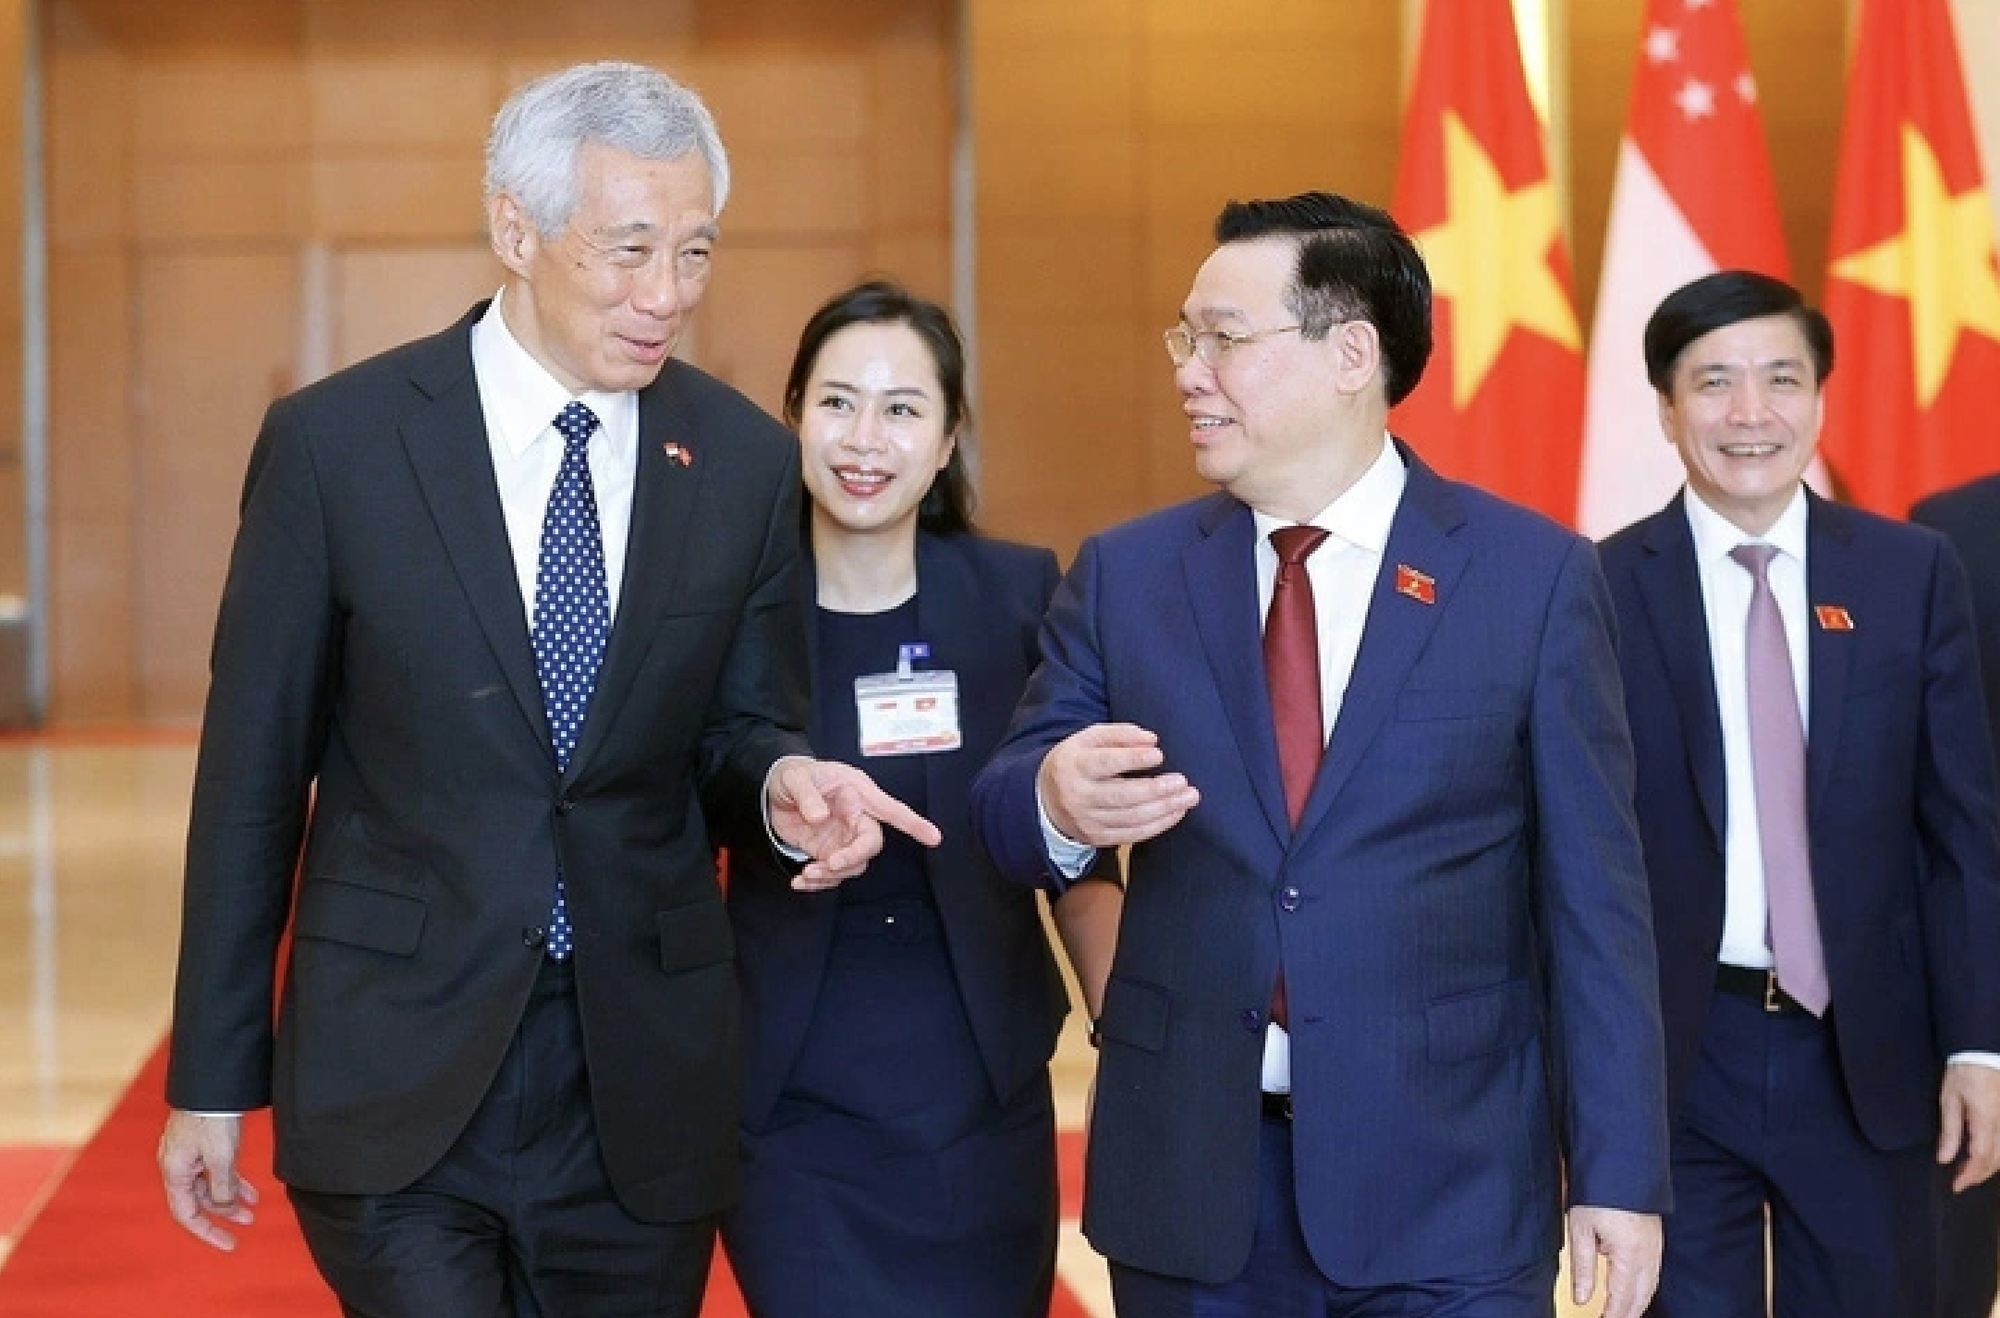 Gặp Thủ tướng Singapore, Tổng bí thư đưa ra nhiều đề nghị hợp tác chiến lược quan trọng  - Ảnh 3.